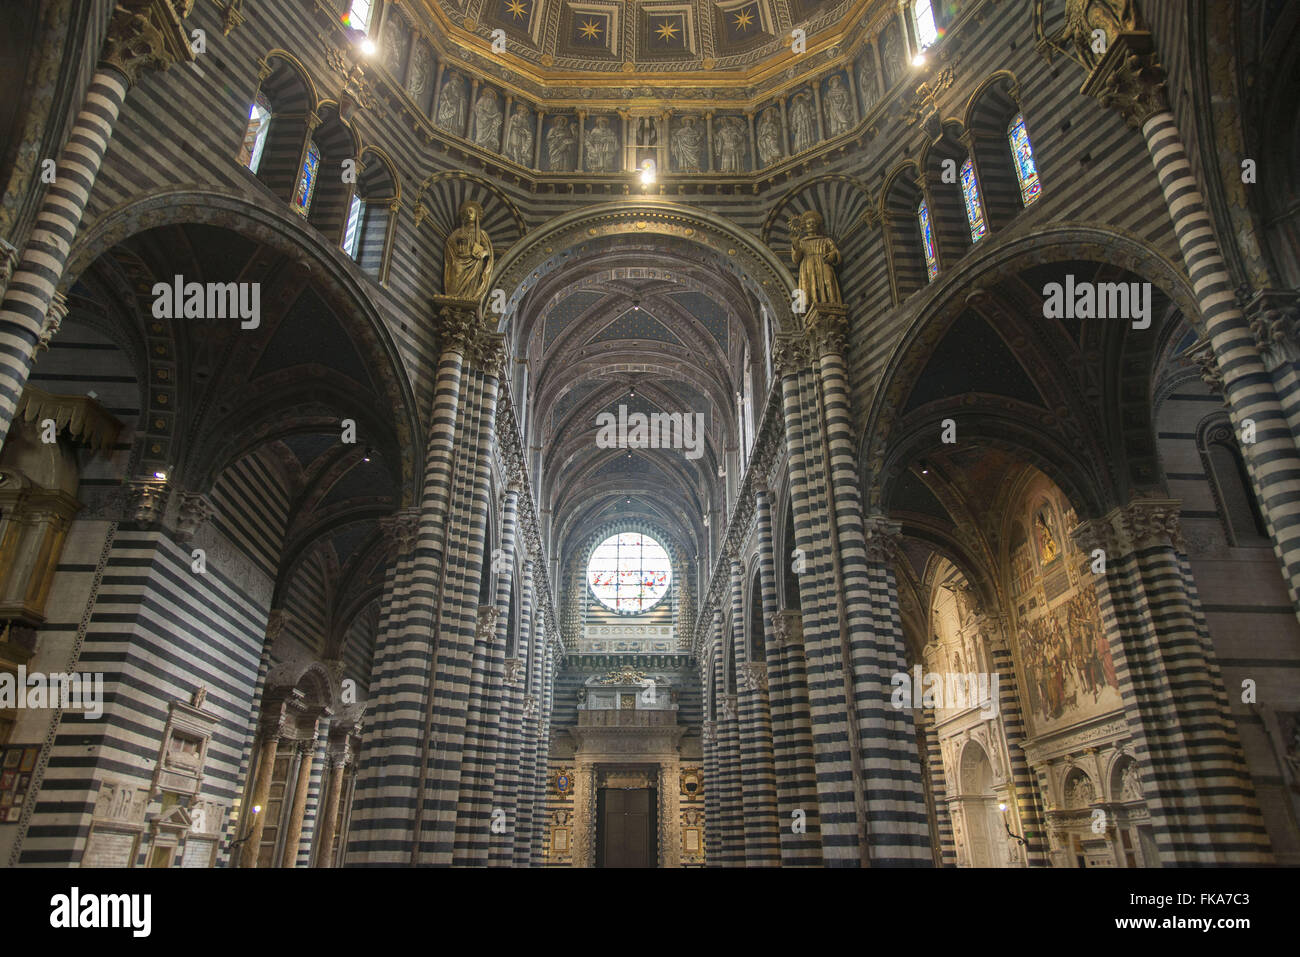 Vista interna do Duomo de Siena em estilo românico-gótico - construção do século XIII Stock Photo